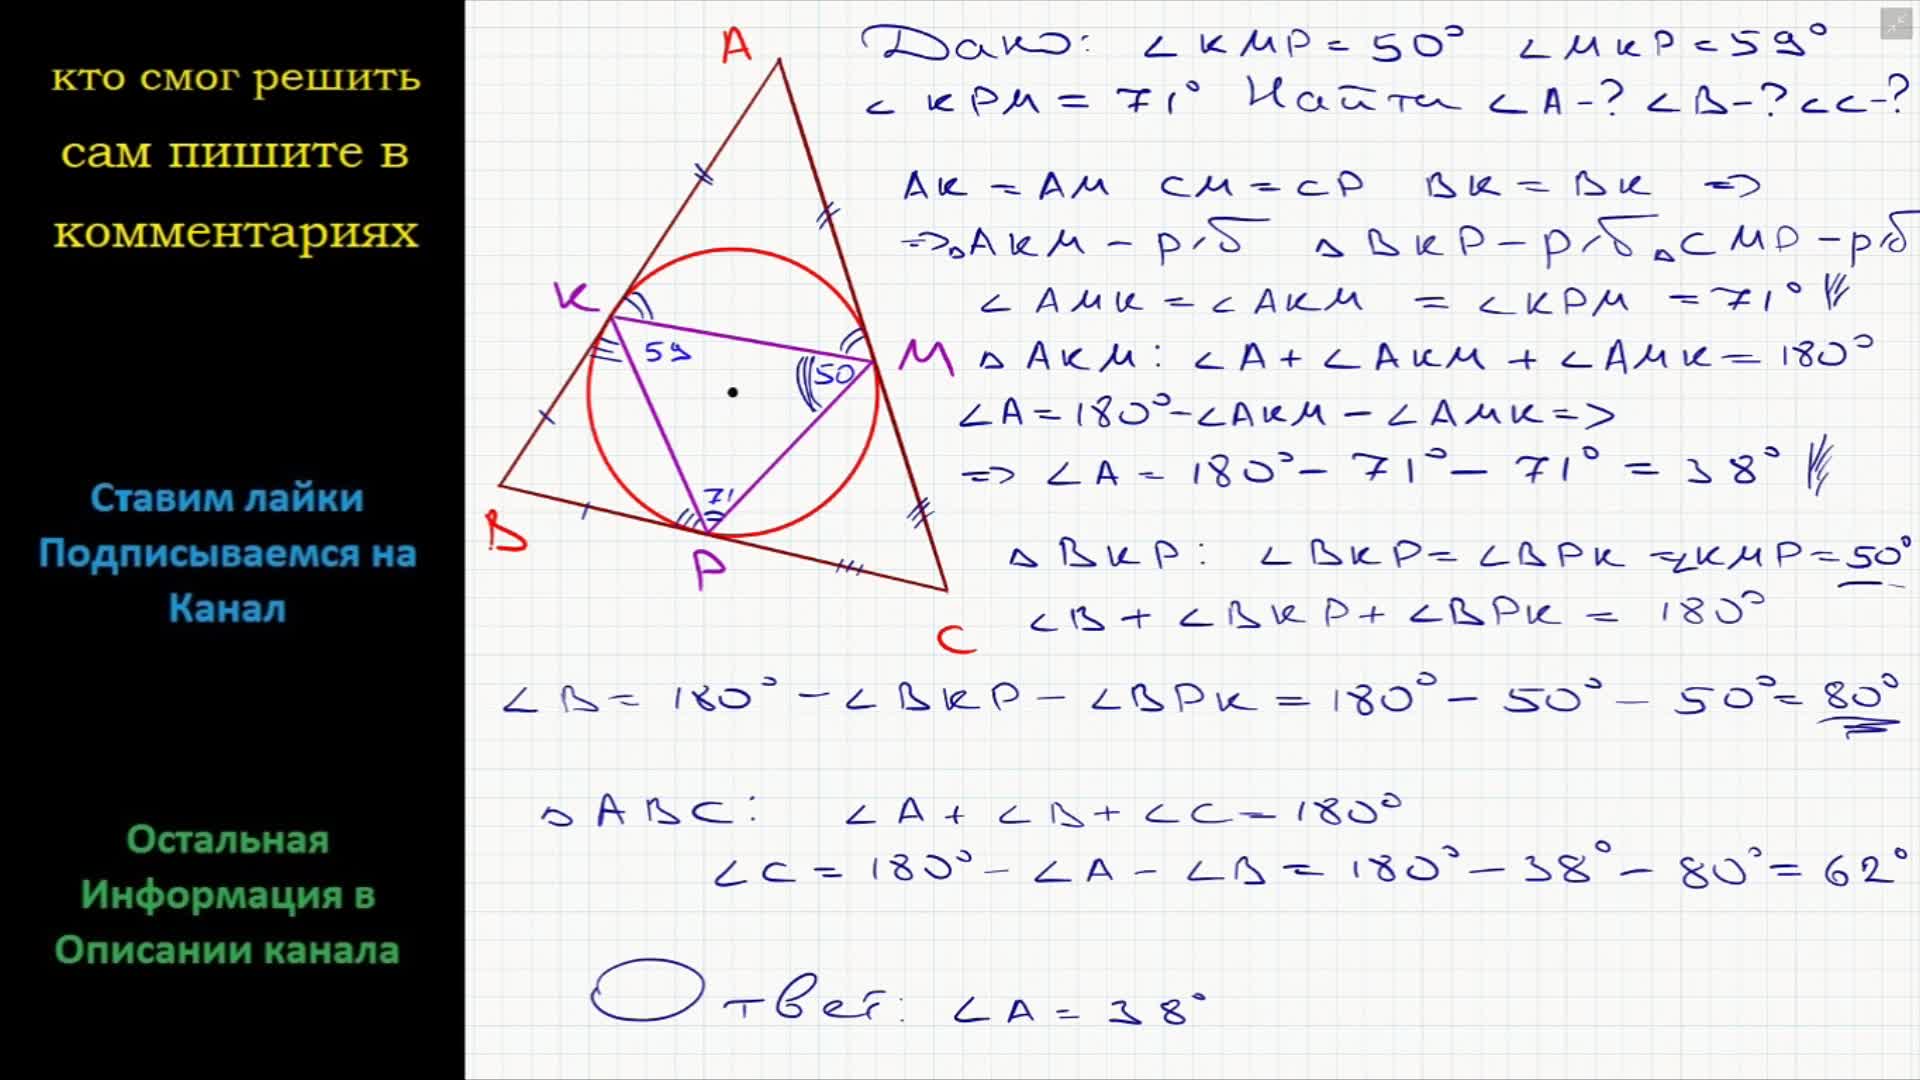 Круг в треугольнике авс. Окружность вписанная в треугольник ABC касается его сторон. Треугольник АВС вписан в окружность. Вписанная окружность в треугольник АВС касается его сторон. Вписанная окружность в треугольник касается его сторон точках.